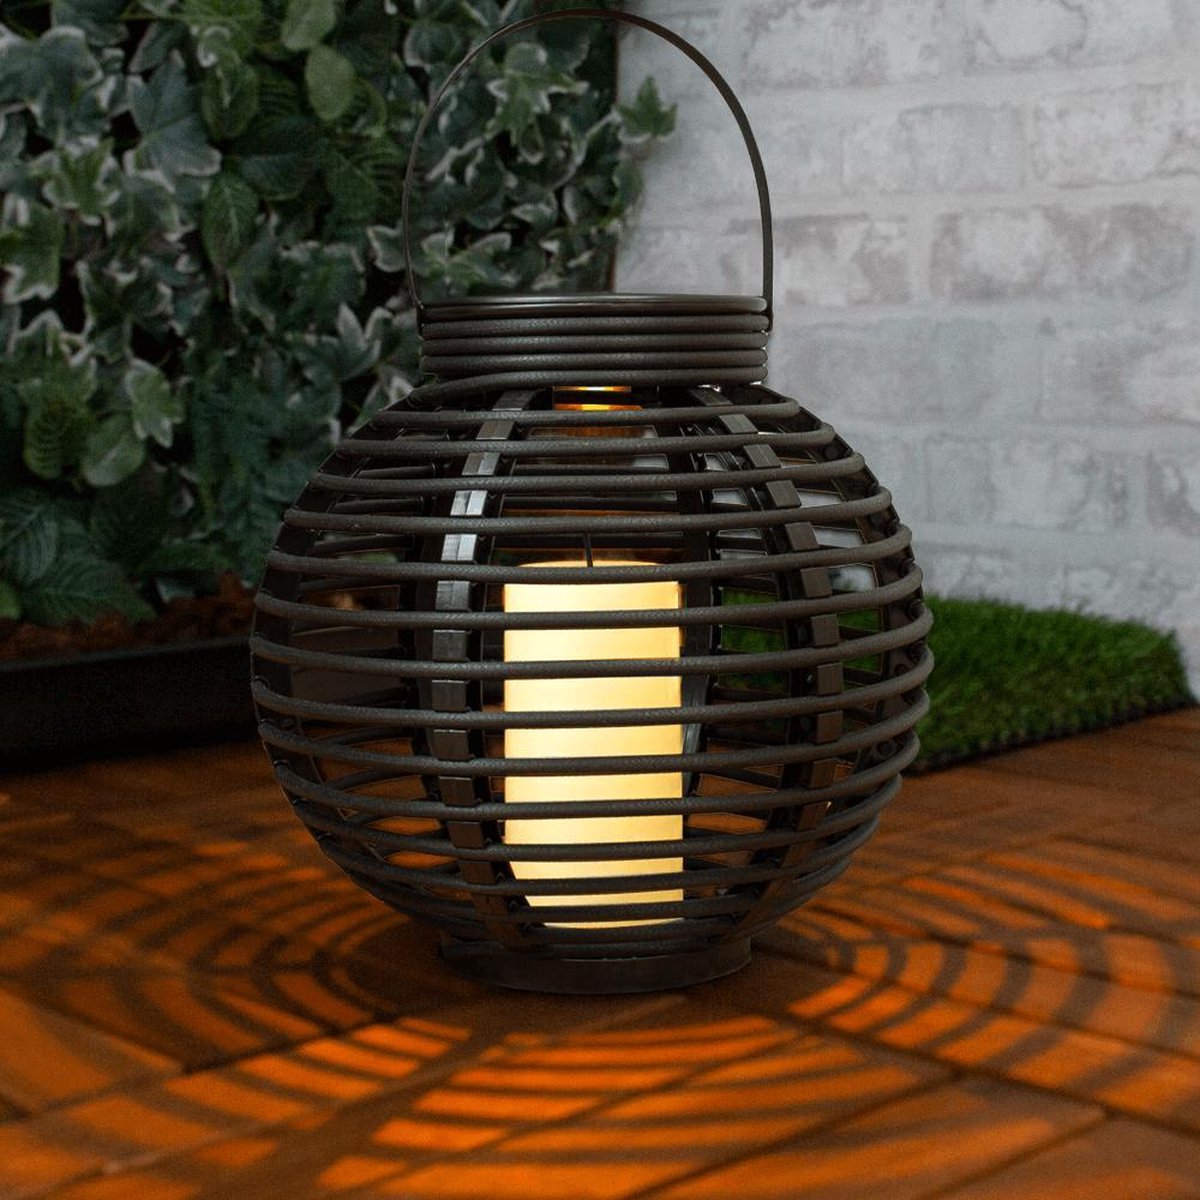 Solar lantaarn voor buiten 'Basket' medium - Buitenlamp lamp op zonne-energie